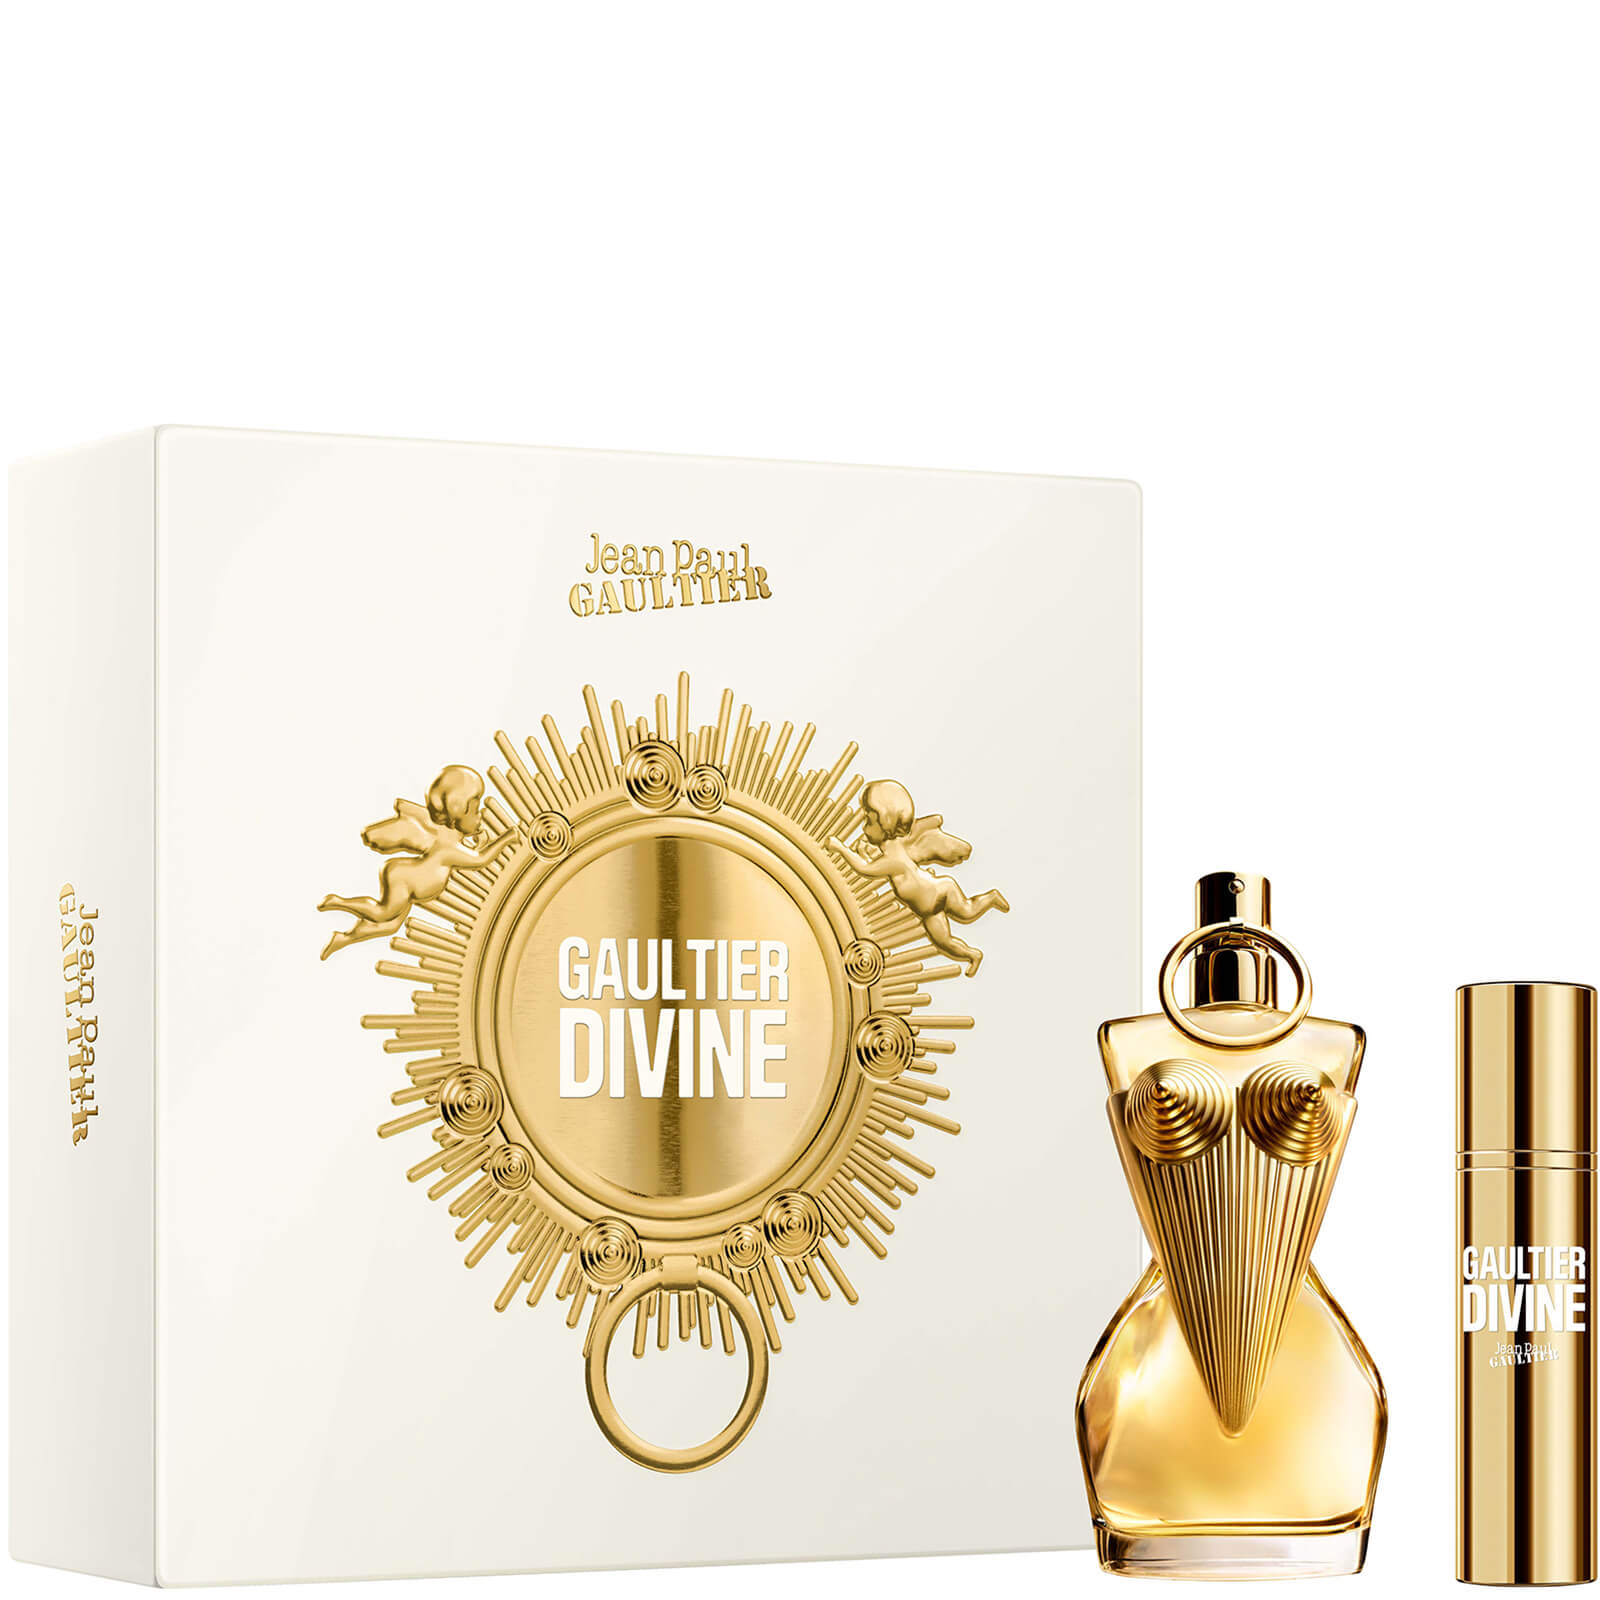 jean paul gaultier divine eau de parfum 50ml gift set (worth £110.40)